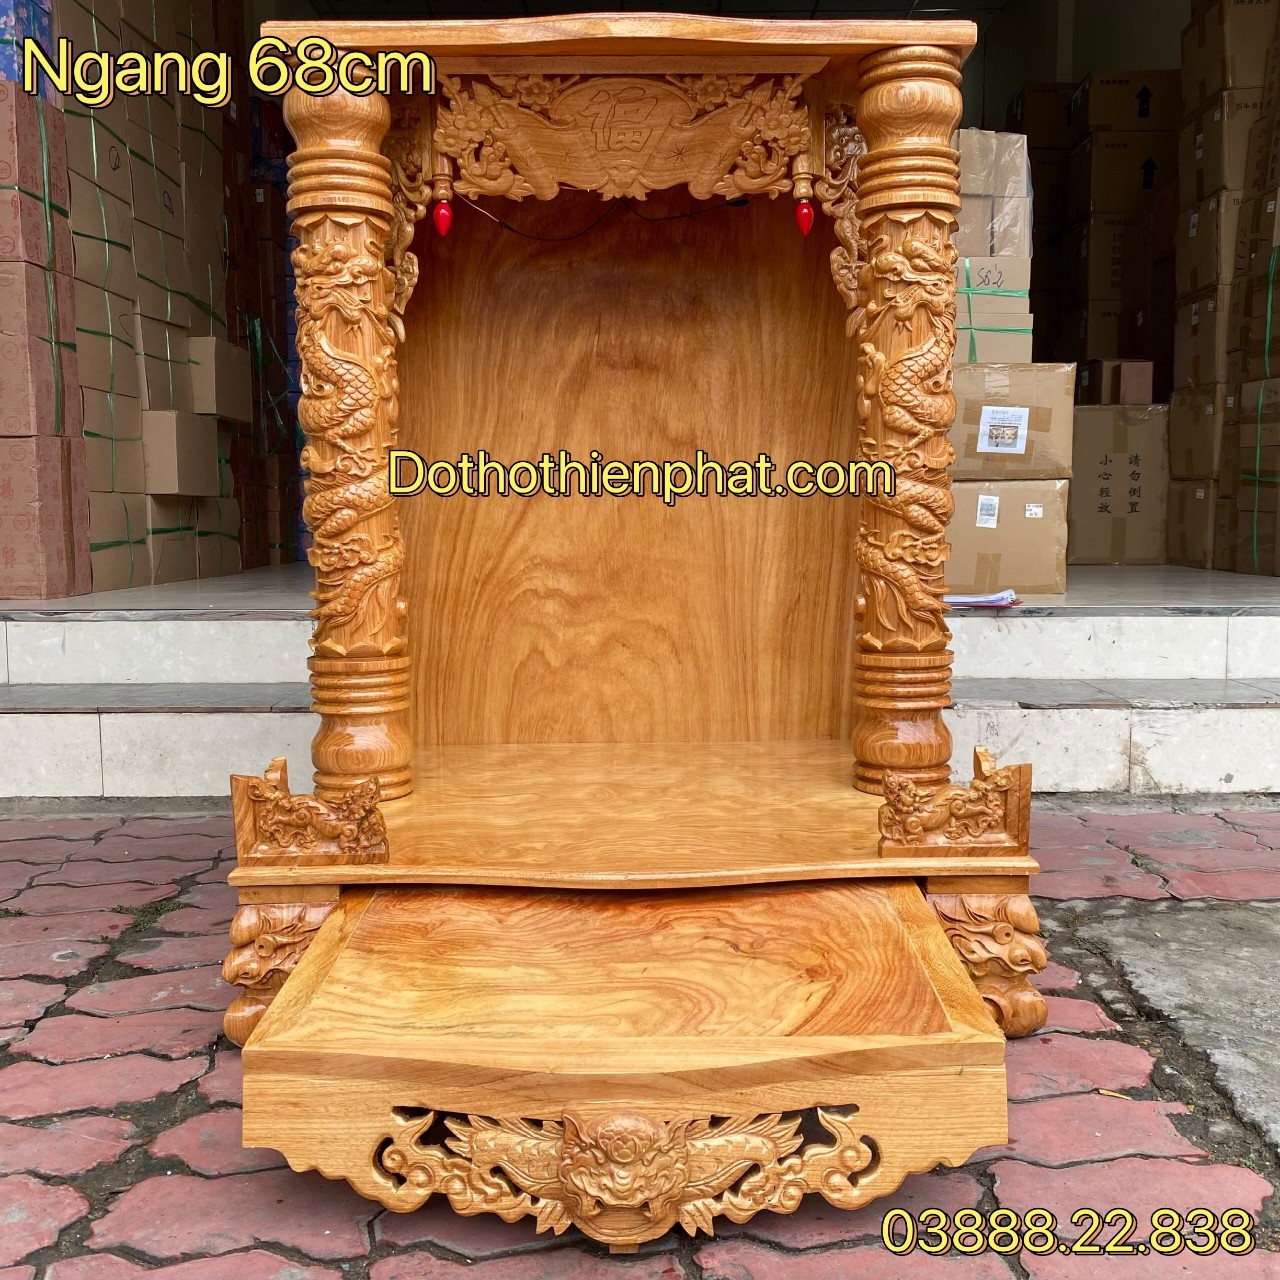 Bàn thờ Nhất Tâm gỗ Gõ đỏ Thần Tài được thiết kế đẹp mắt và trang trọng cho năm